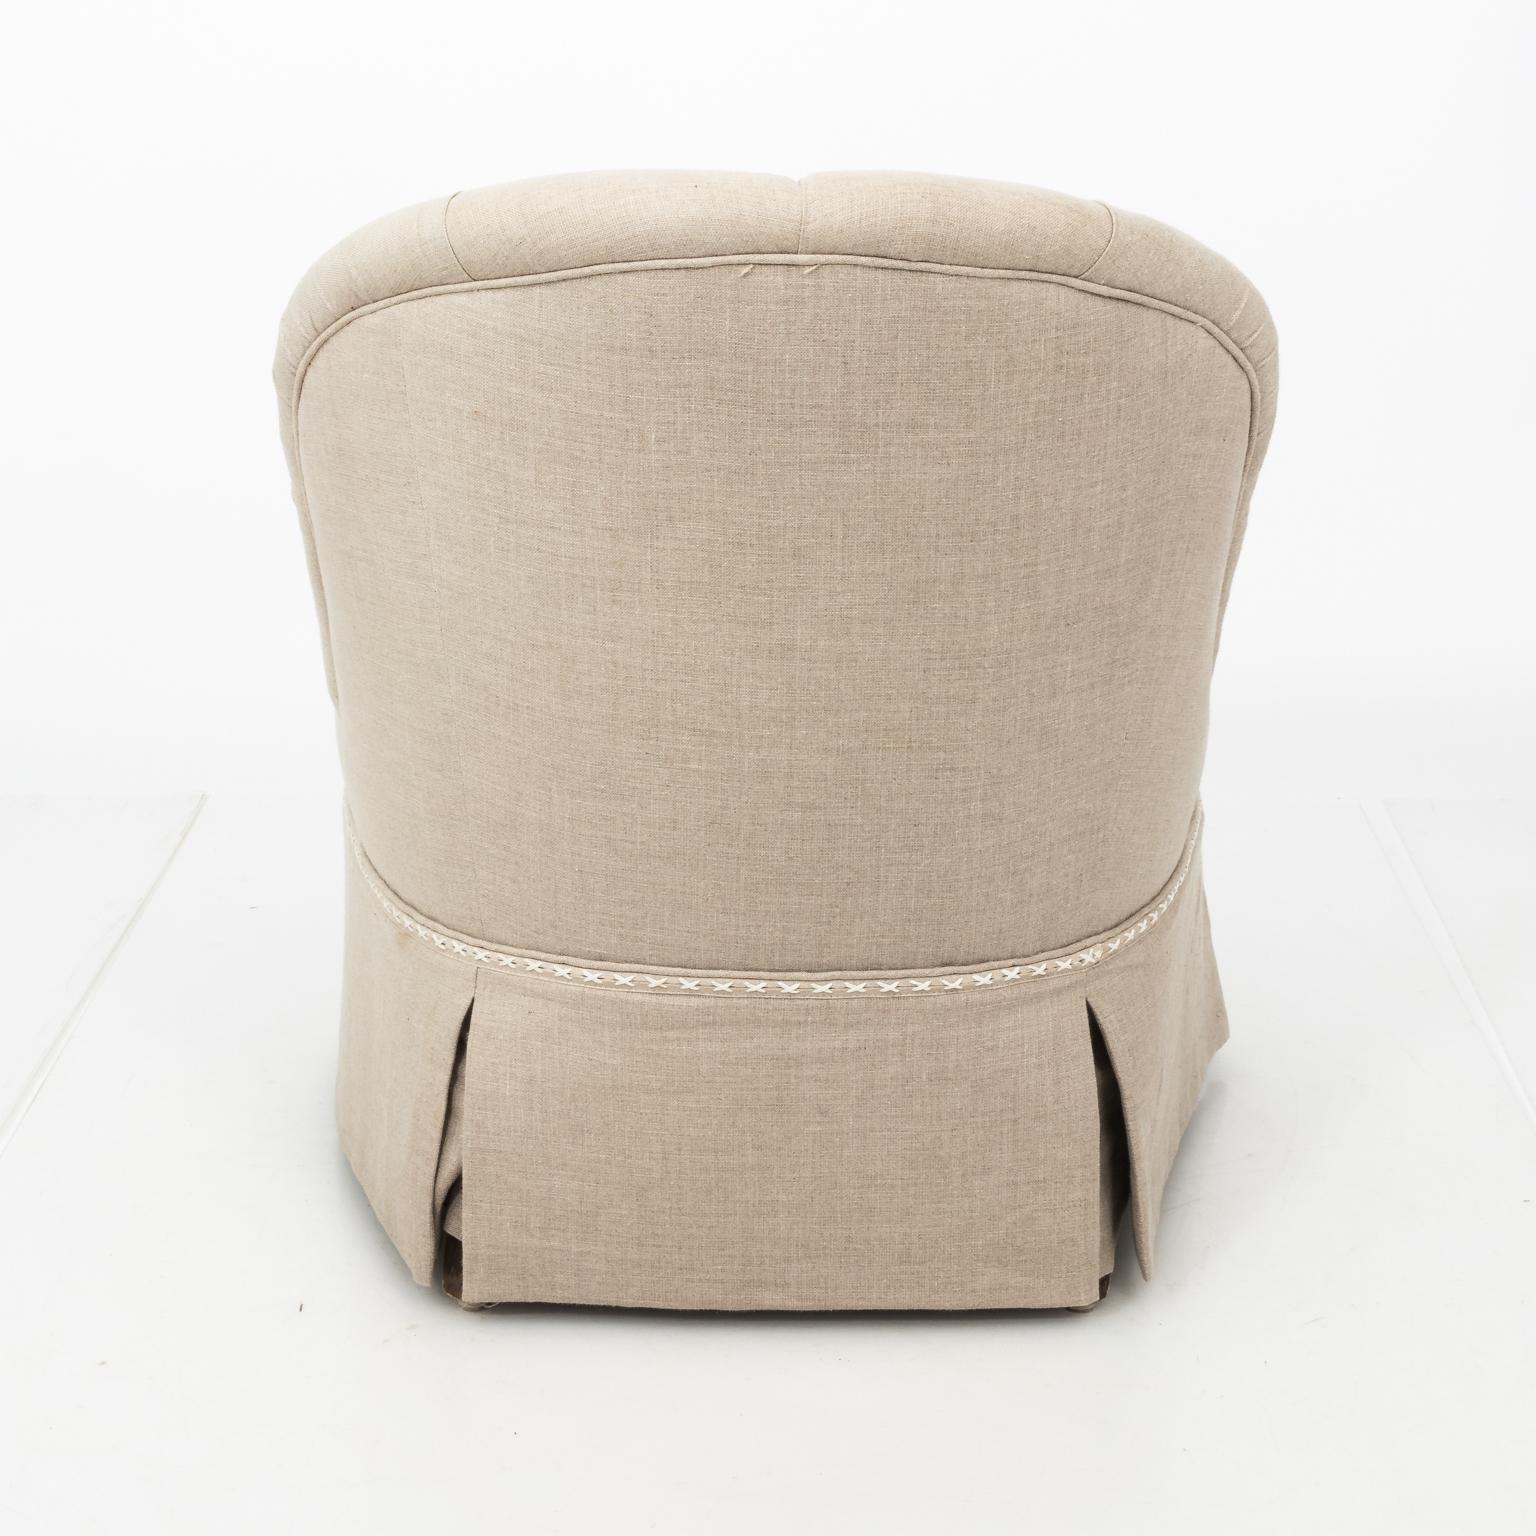 Pair of Tufted Linen Slipper Chairs (20. Jahrhundert)